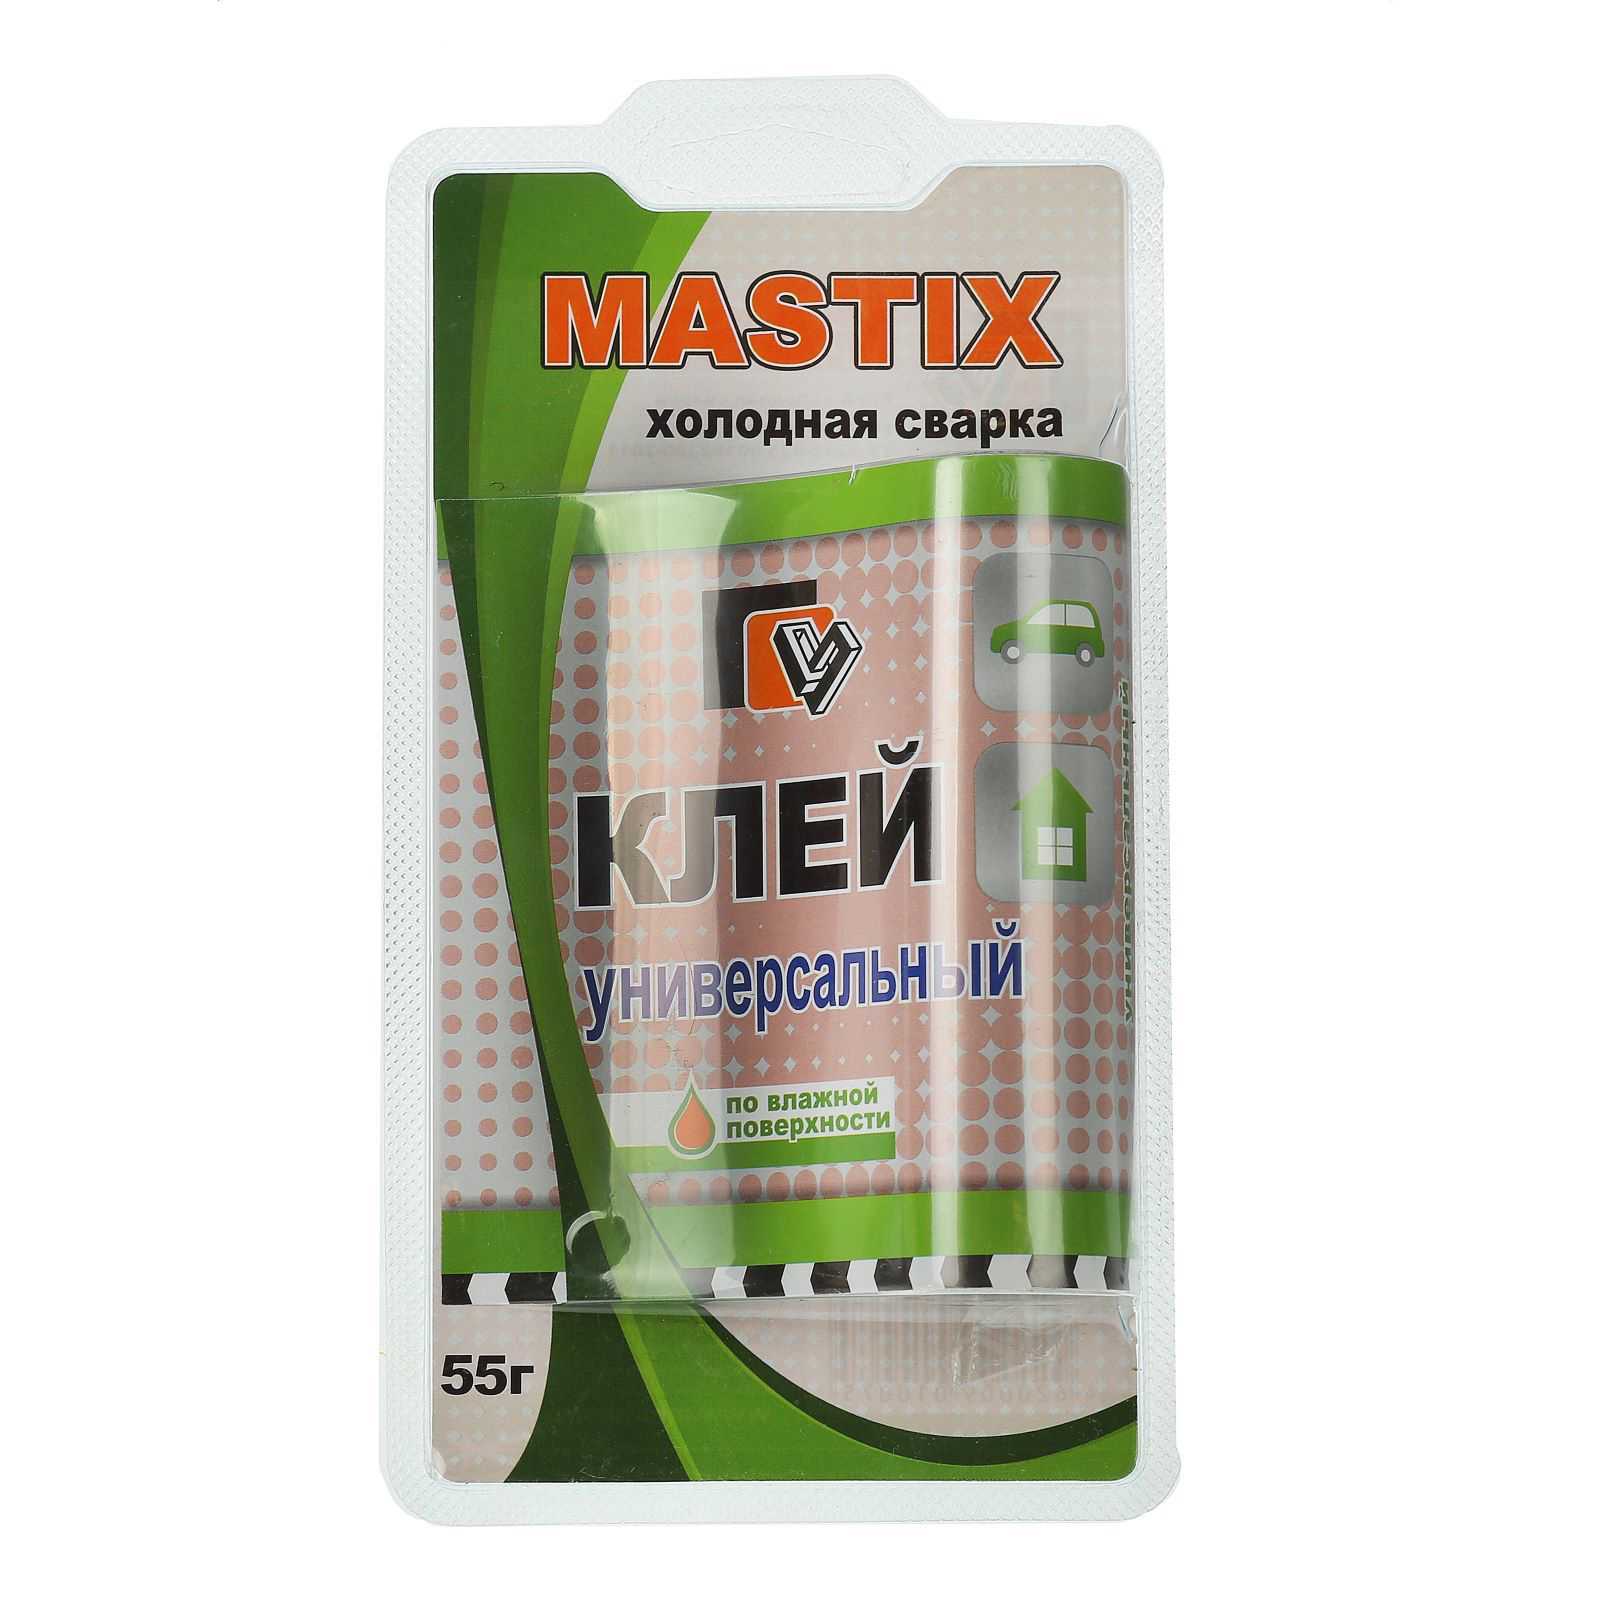 Как применять холодную сварку mastix?